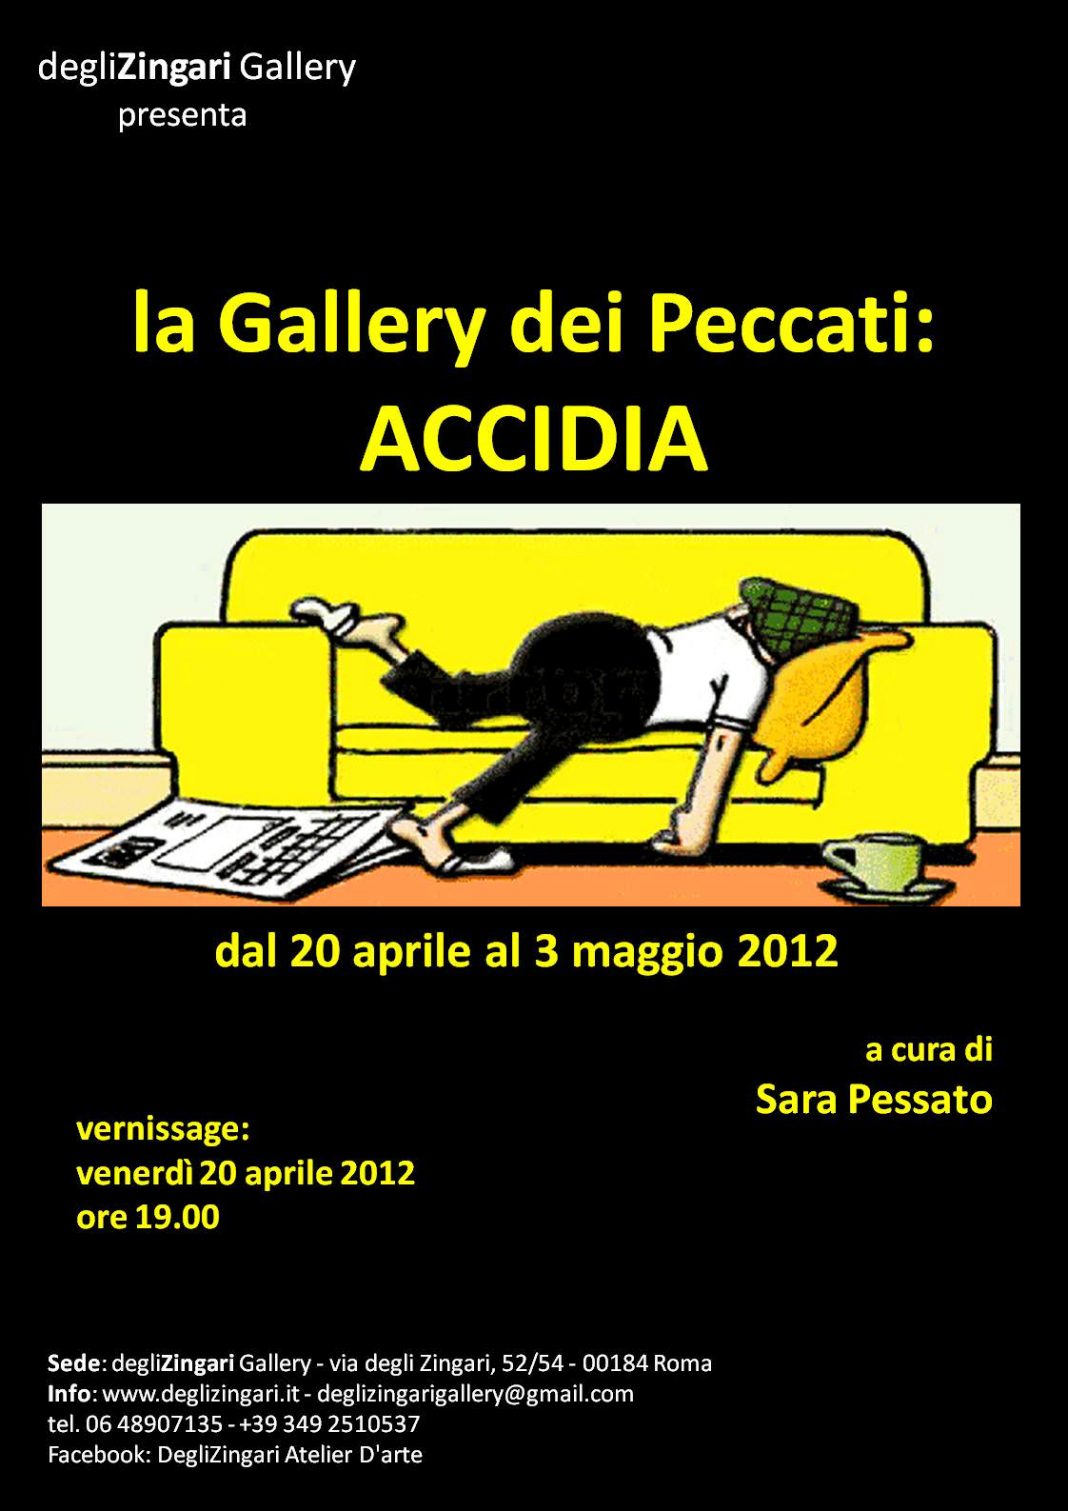 la Gallery dei Peccati: Accidiahttps://www.exibart.com/repository/media/eventi/2012/04/la-gallery-dei-peccati-accidia-1068x1511.jpg